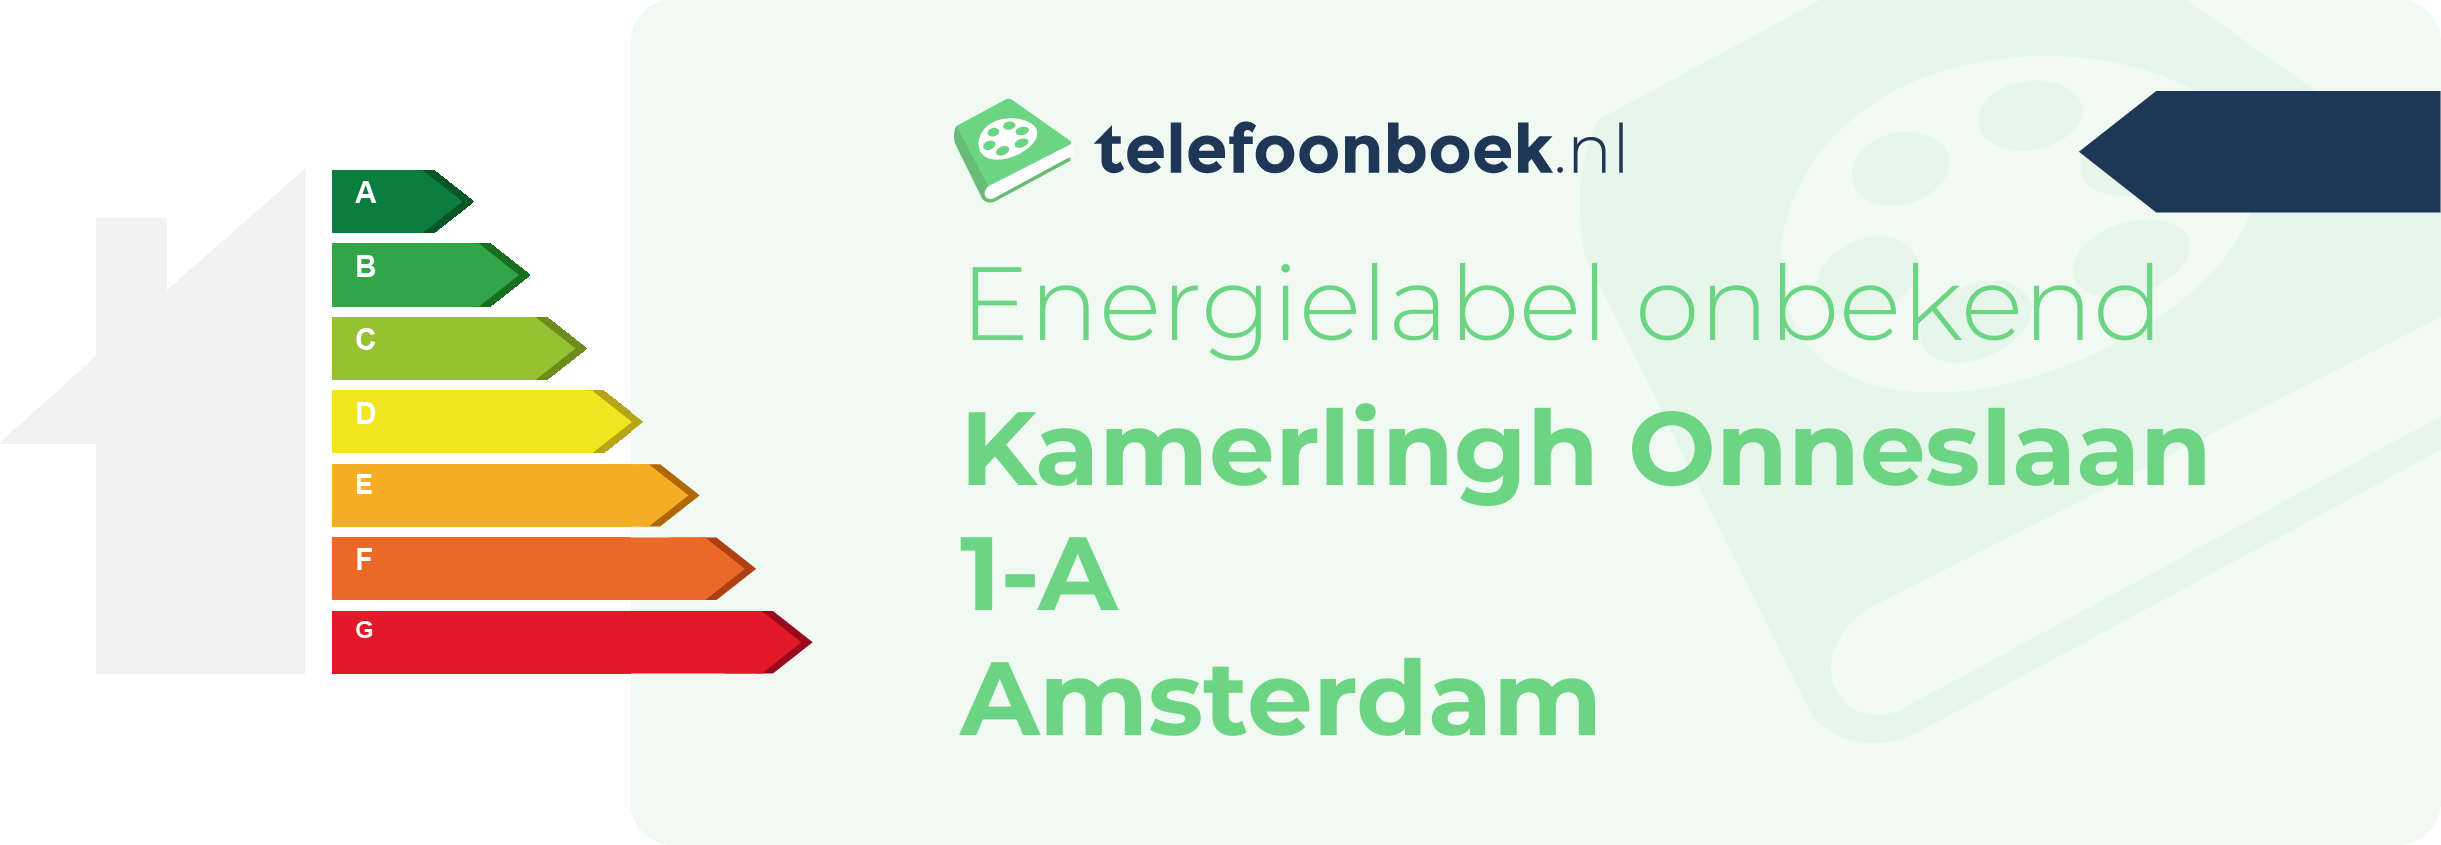 Energielabel Kamerlingh Onneslaan 1-A Amsterdam